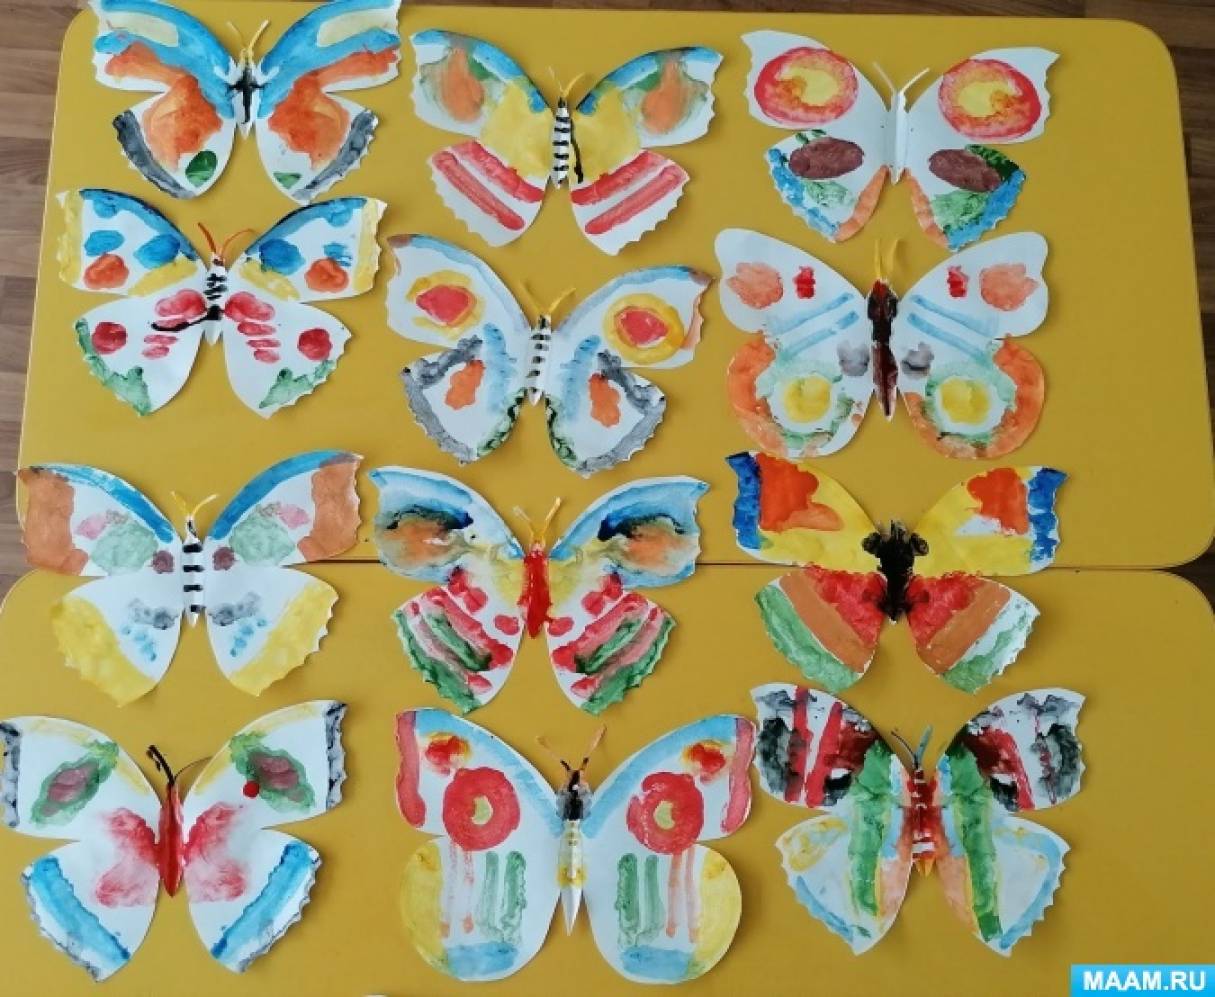 Конспект занятия по рисованию в старшей группе в технике «Монотипия» «Разноцветные бабочки» ко Дню симметрии на МAAM